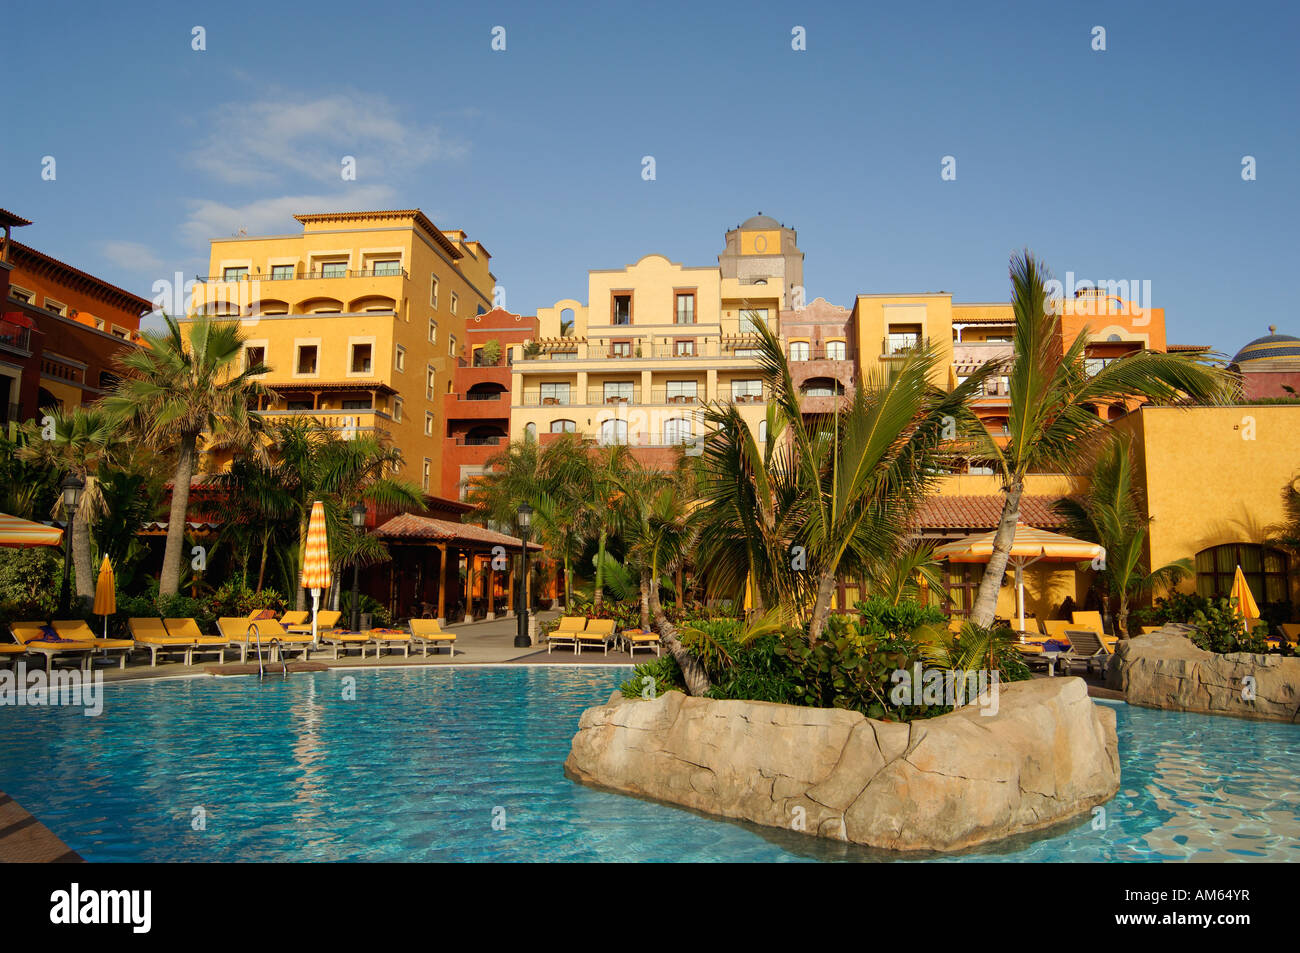 Spain, Canary Islands, Tenerife, Playa de las Americas, Villa Cortes hotel  Stock Photo - Alamy